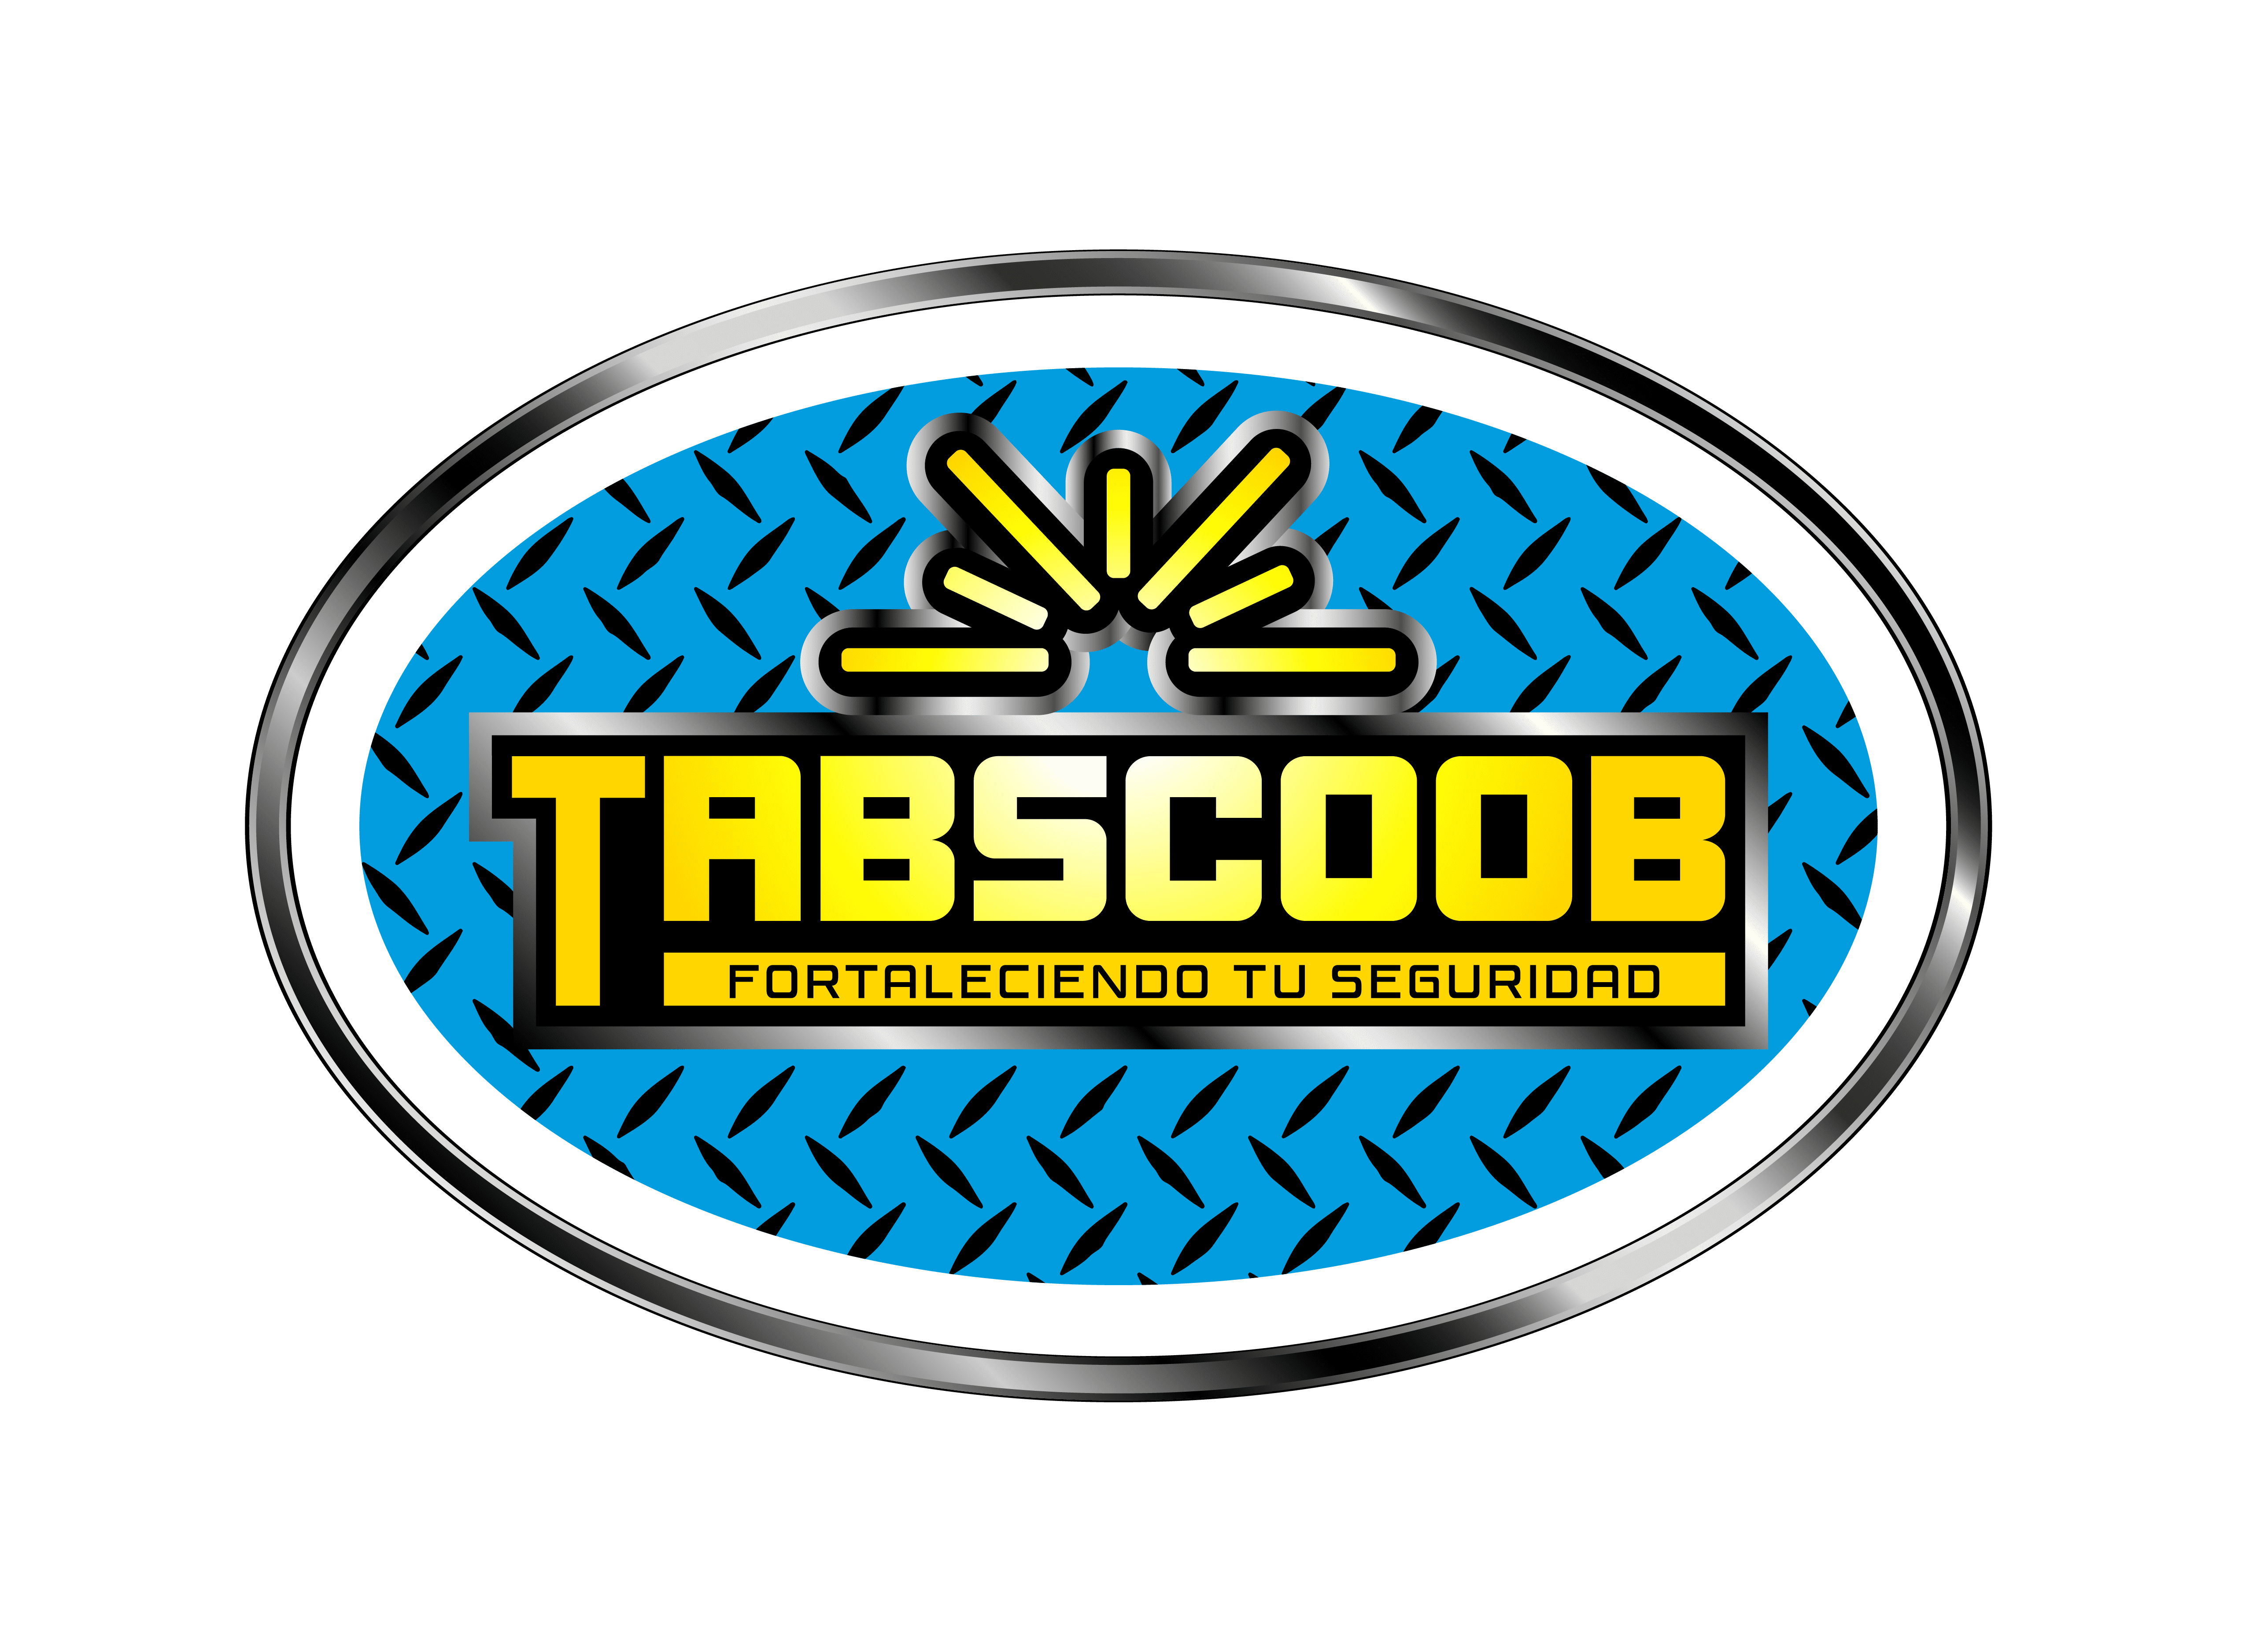 Tabscoob - Equipos de seguridad Industrial Y Soldadura